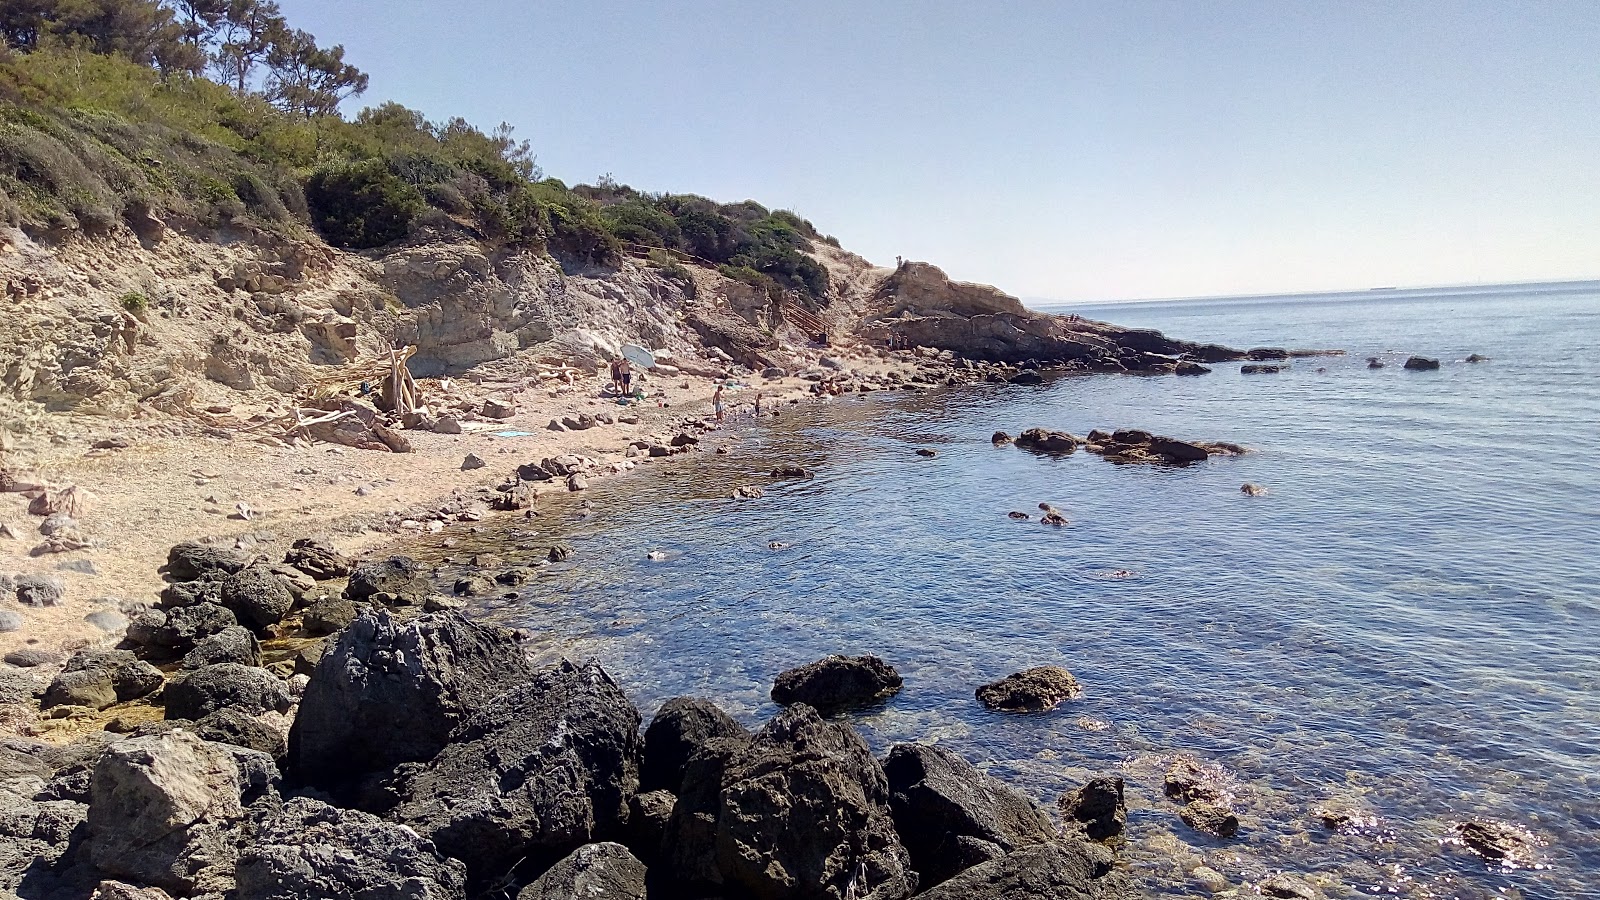 Fotografija Spiaggia La Piletta nahaja se v naravnem okolju